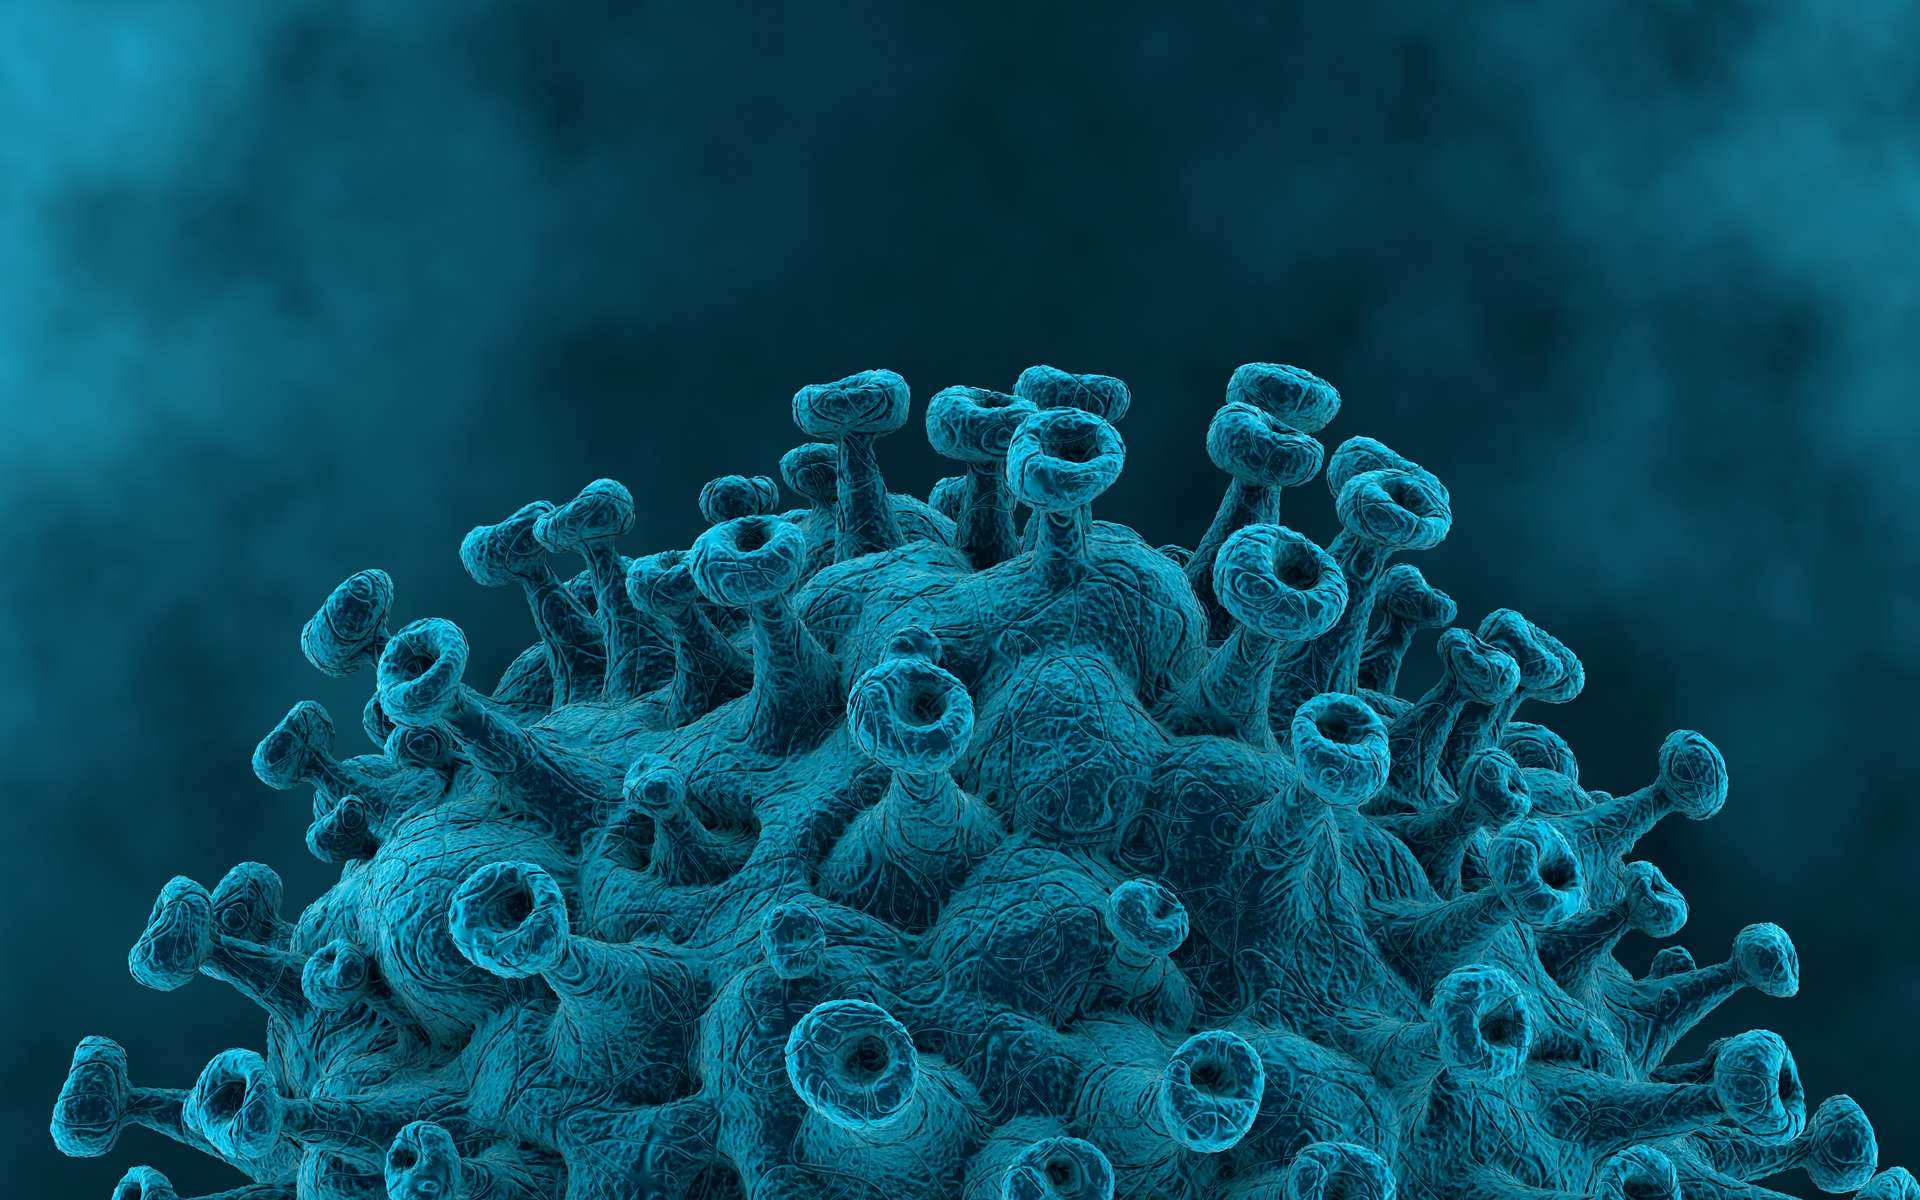 Comment réagissent les anticorps neutralisants face au variant Omicron ? © Crocothery, Adobe Stock